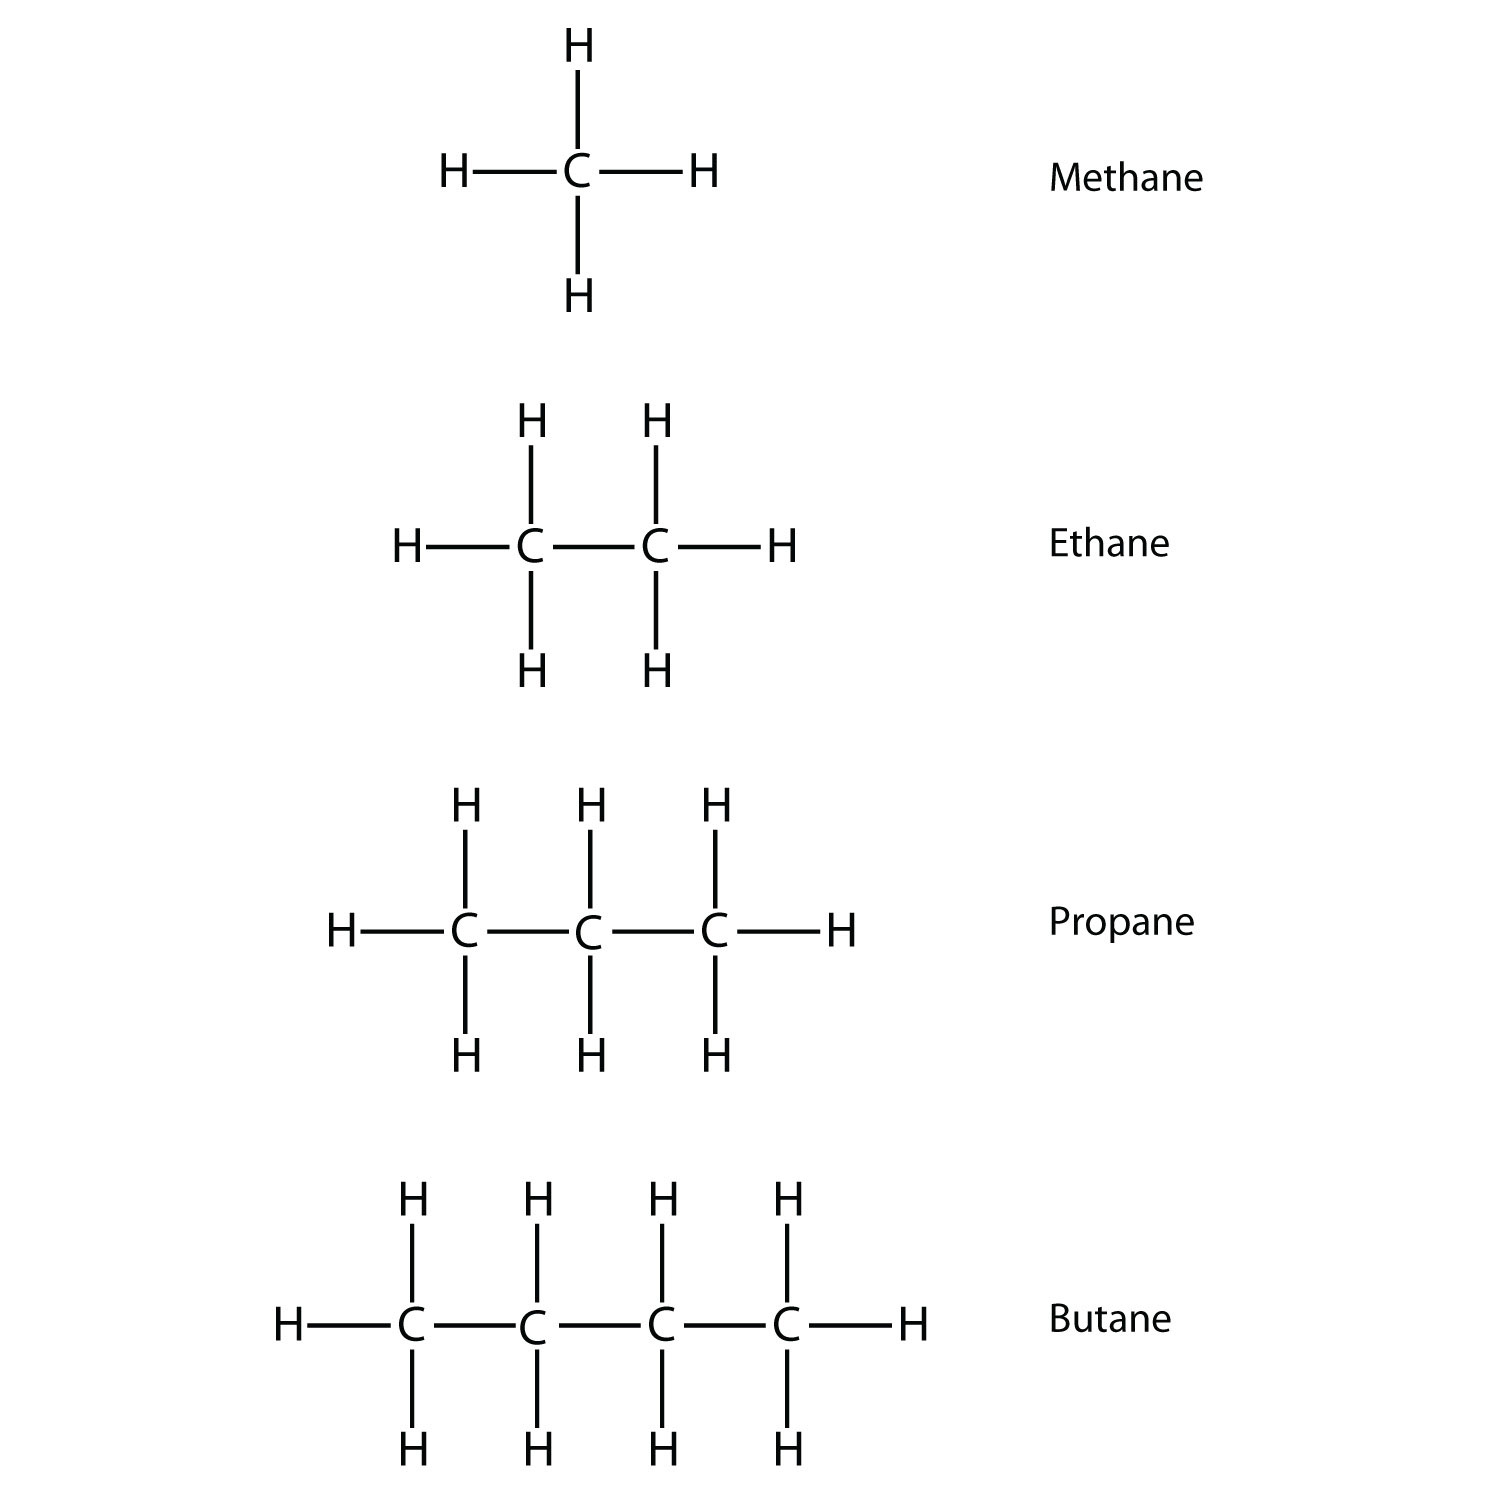 Fórmula estructural de metano, etano, propano y butano.